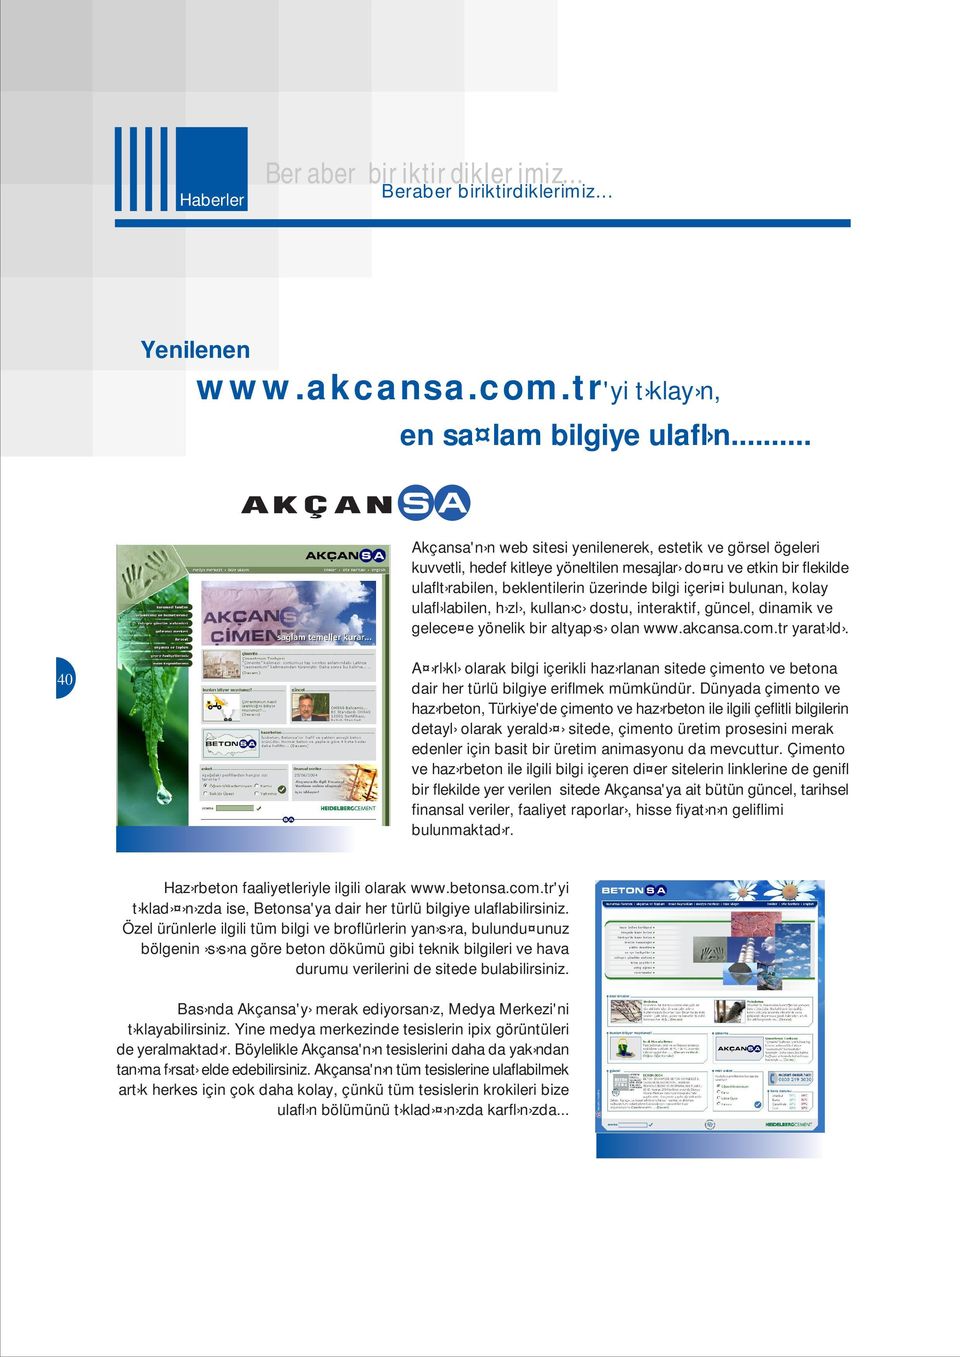 kolay ulafl labilen, h zl, kullan c dostu, interaktif, güncel, dinamik ve gelece e yönelik bir altyap s olan www.akcansa.com.tr yarat ld.